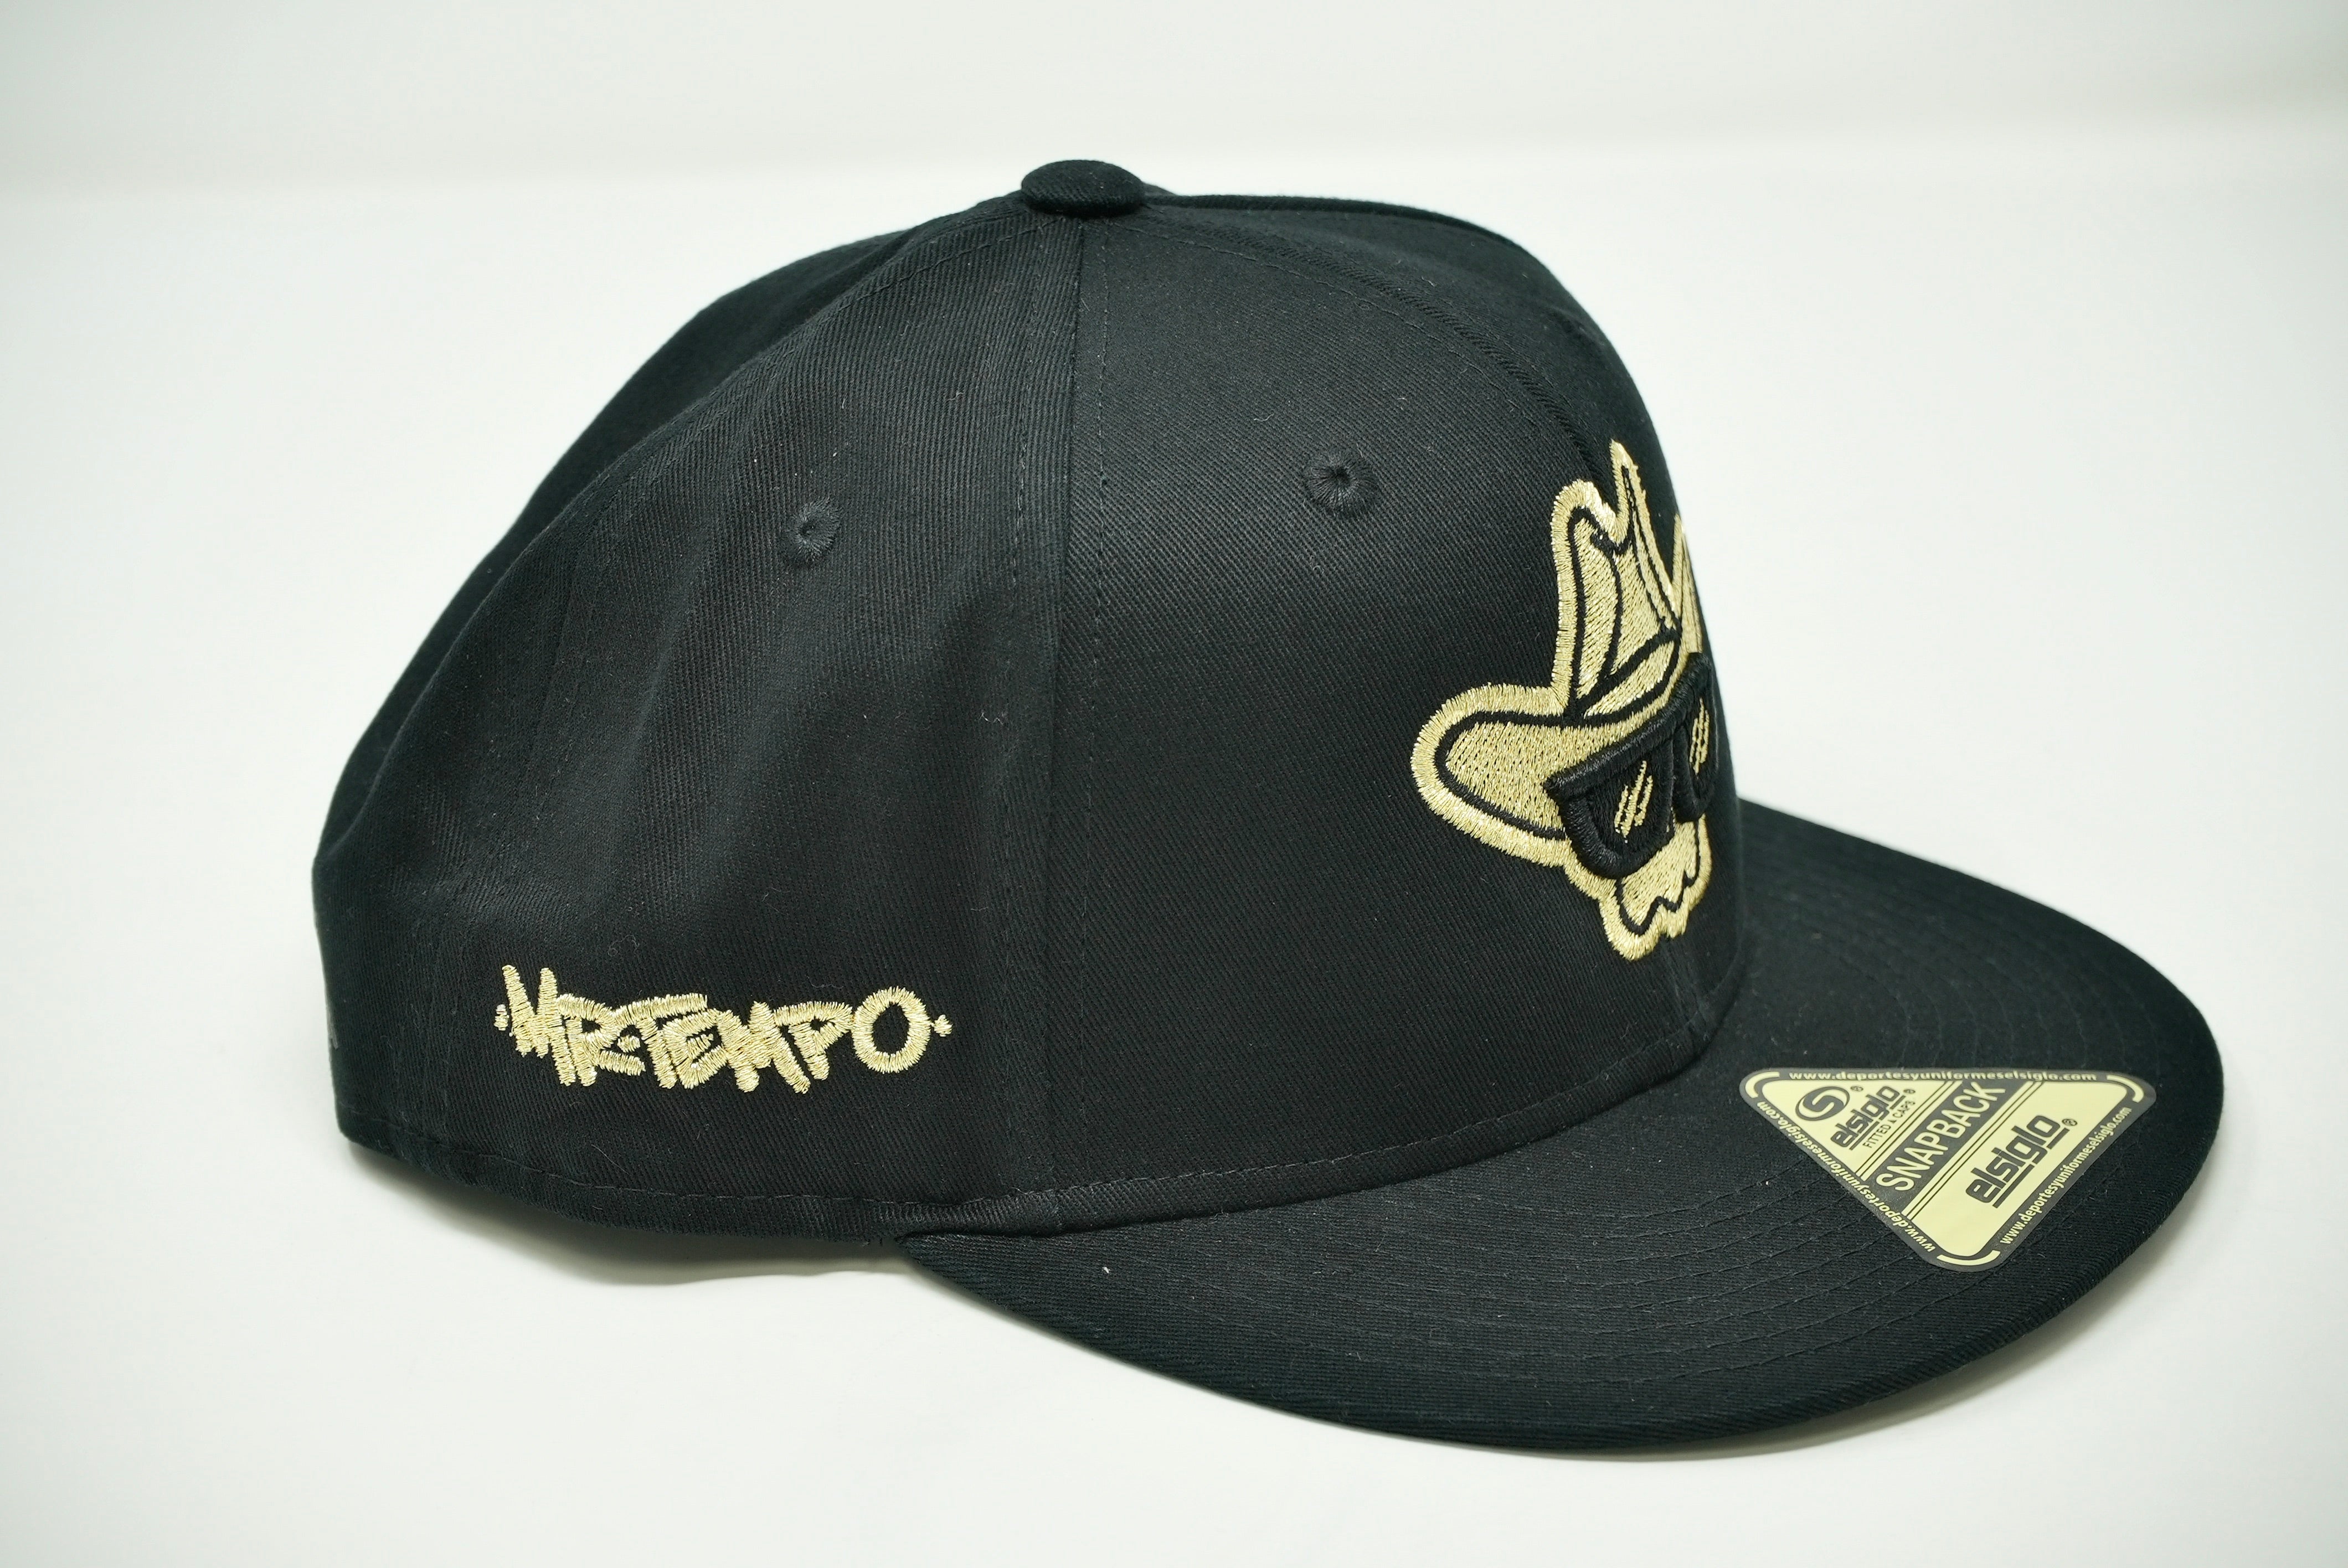 Mr.Tempo Black/Gold Hat